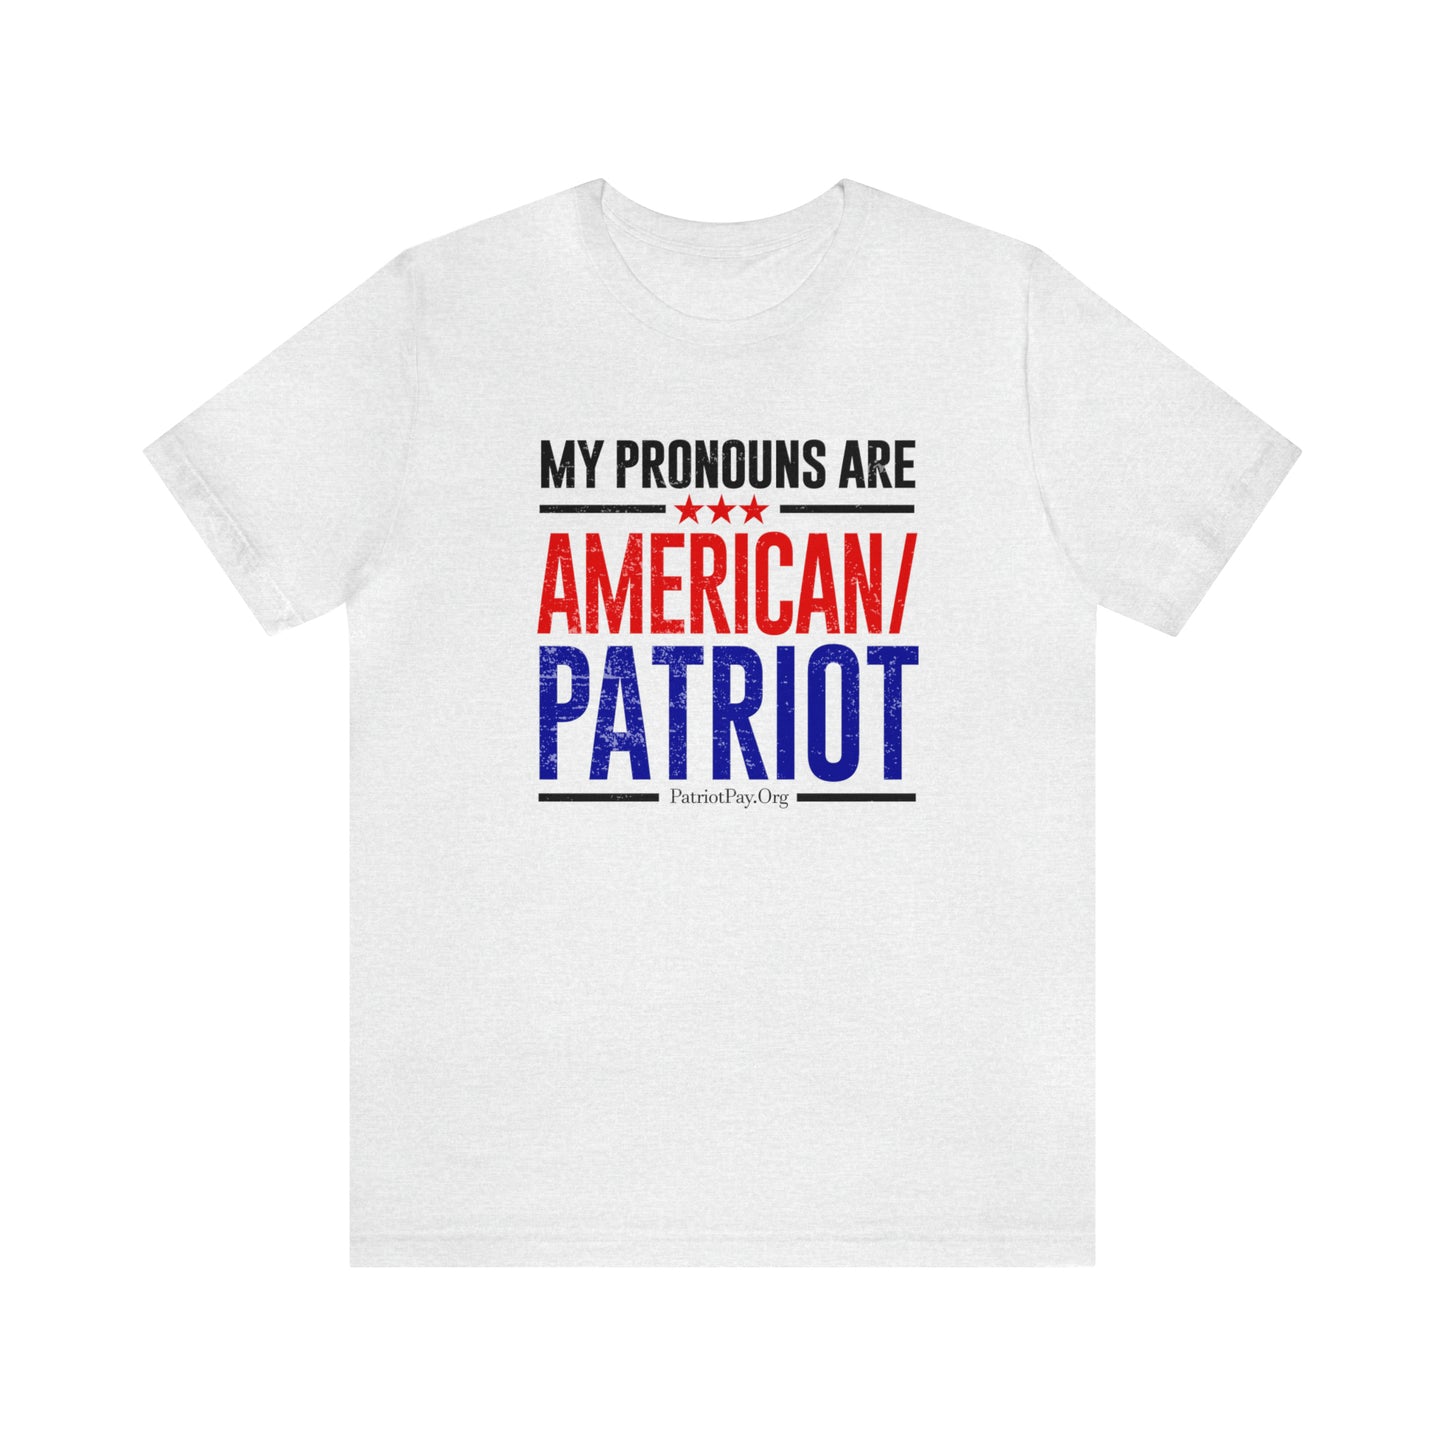 American Patriot Short Sleeve Tee